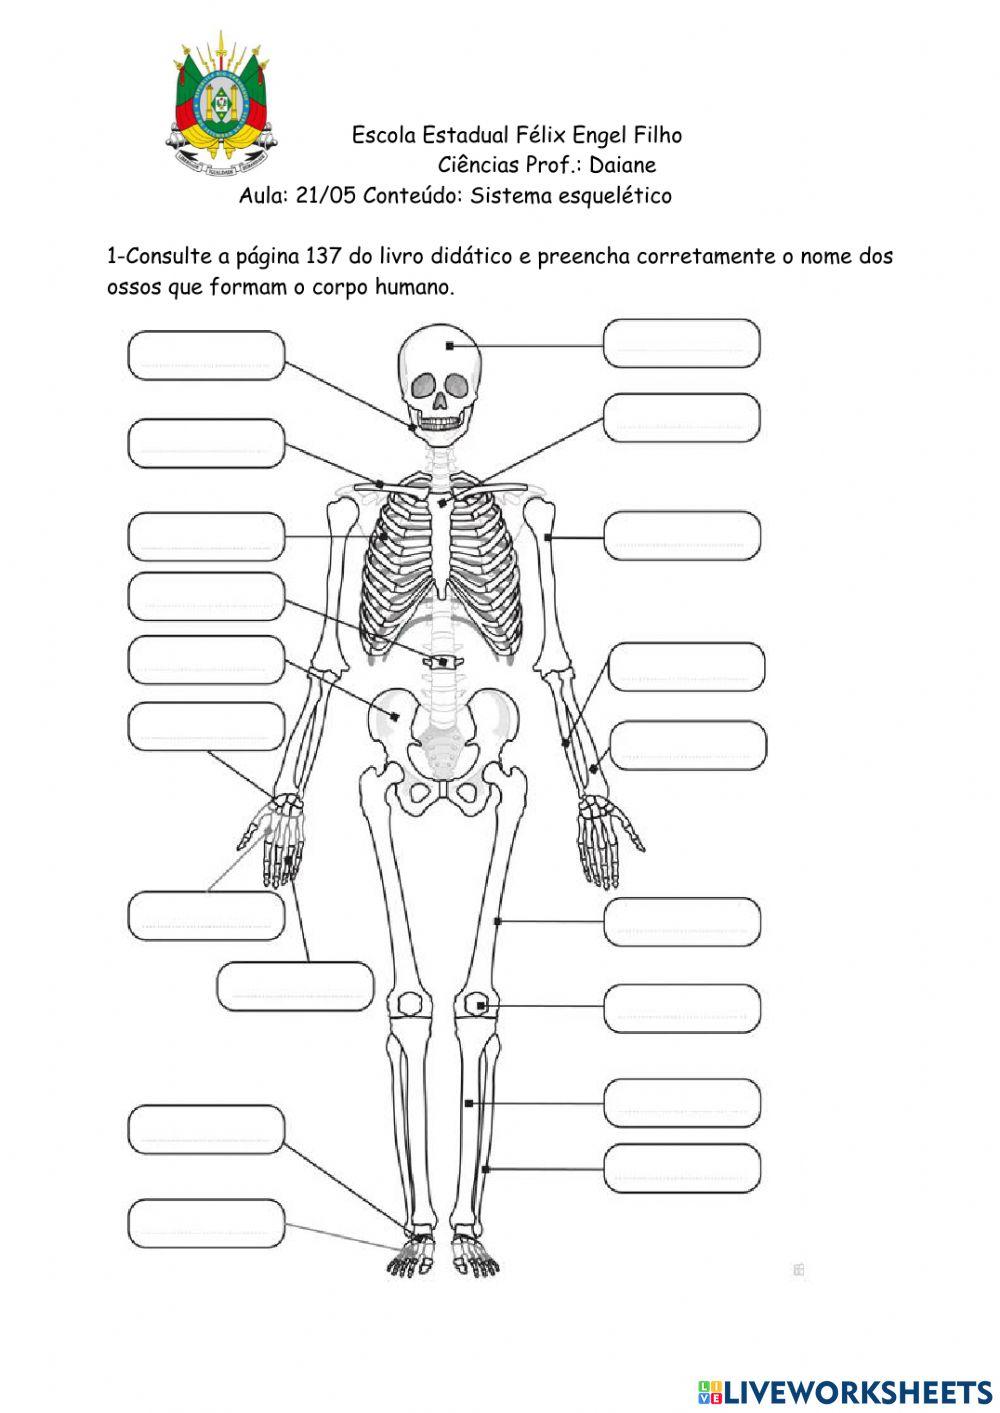 Ossos do esqueleto humano